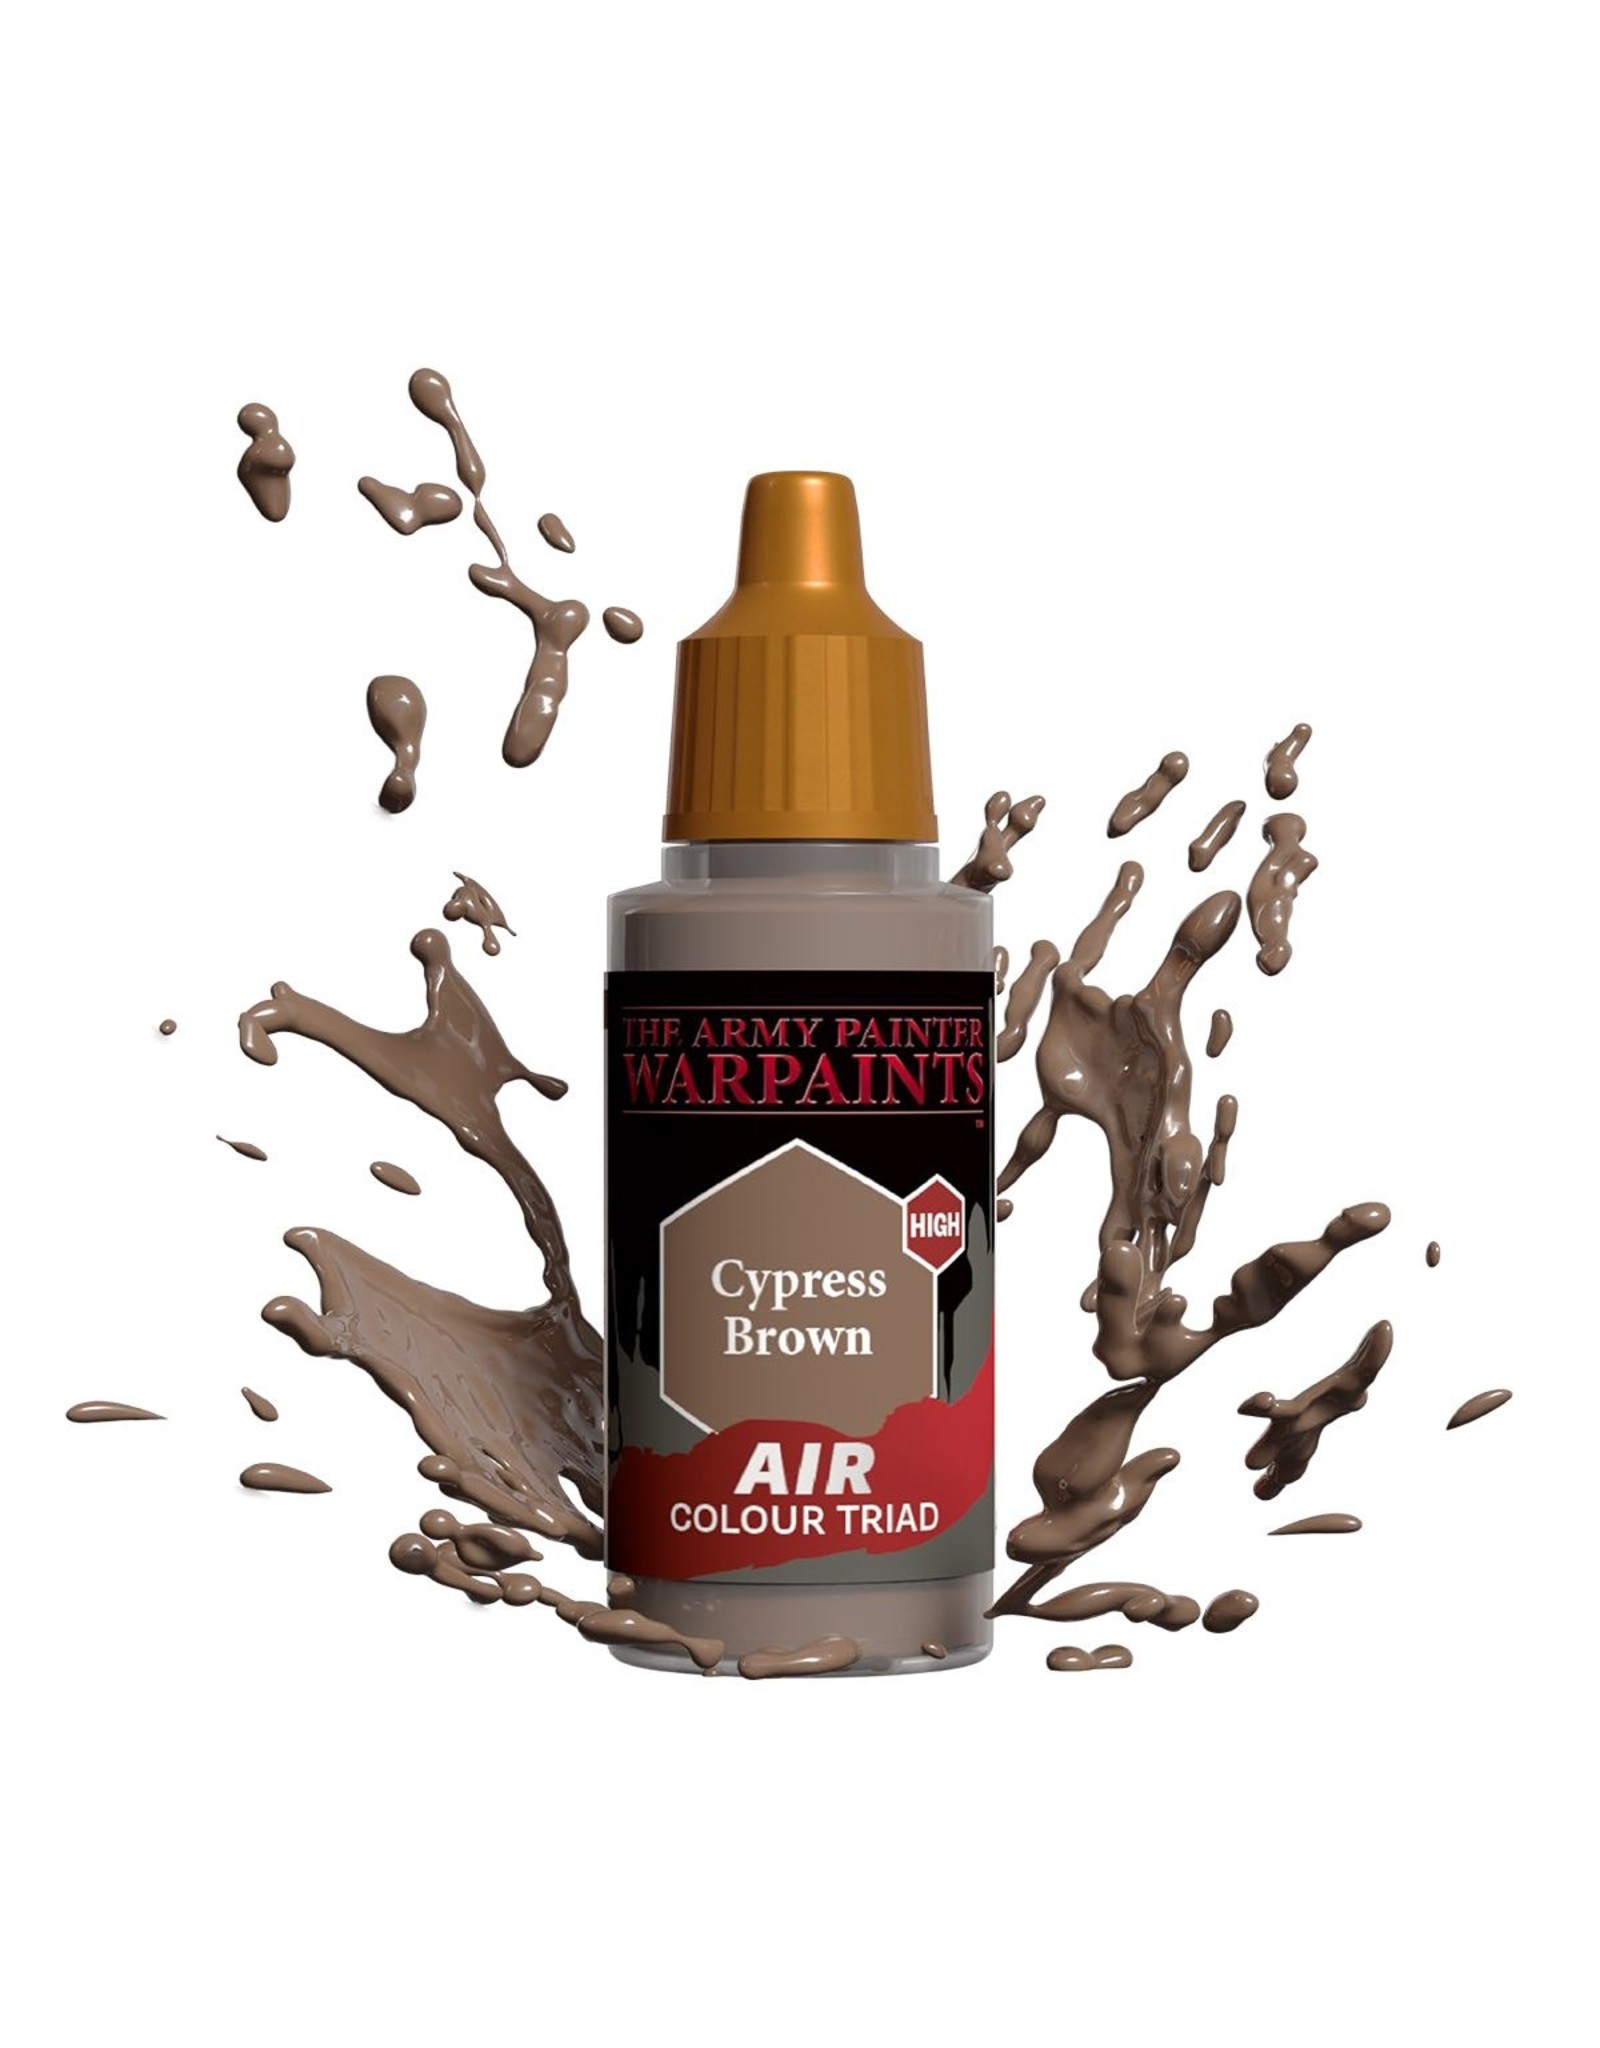 Army Painter Warpaint Air: Cypress Brown, 18ml.